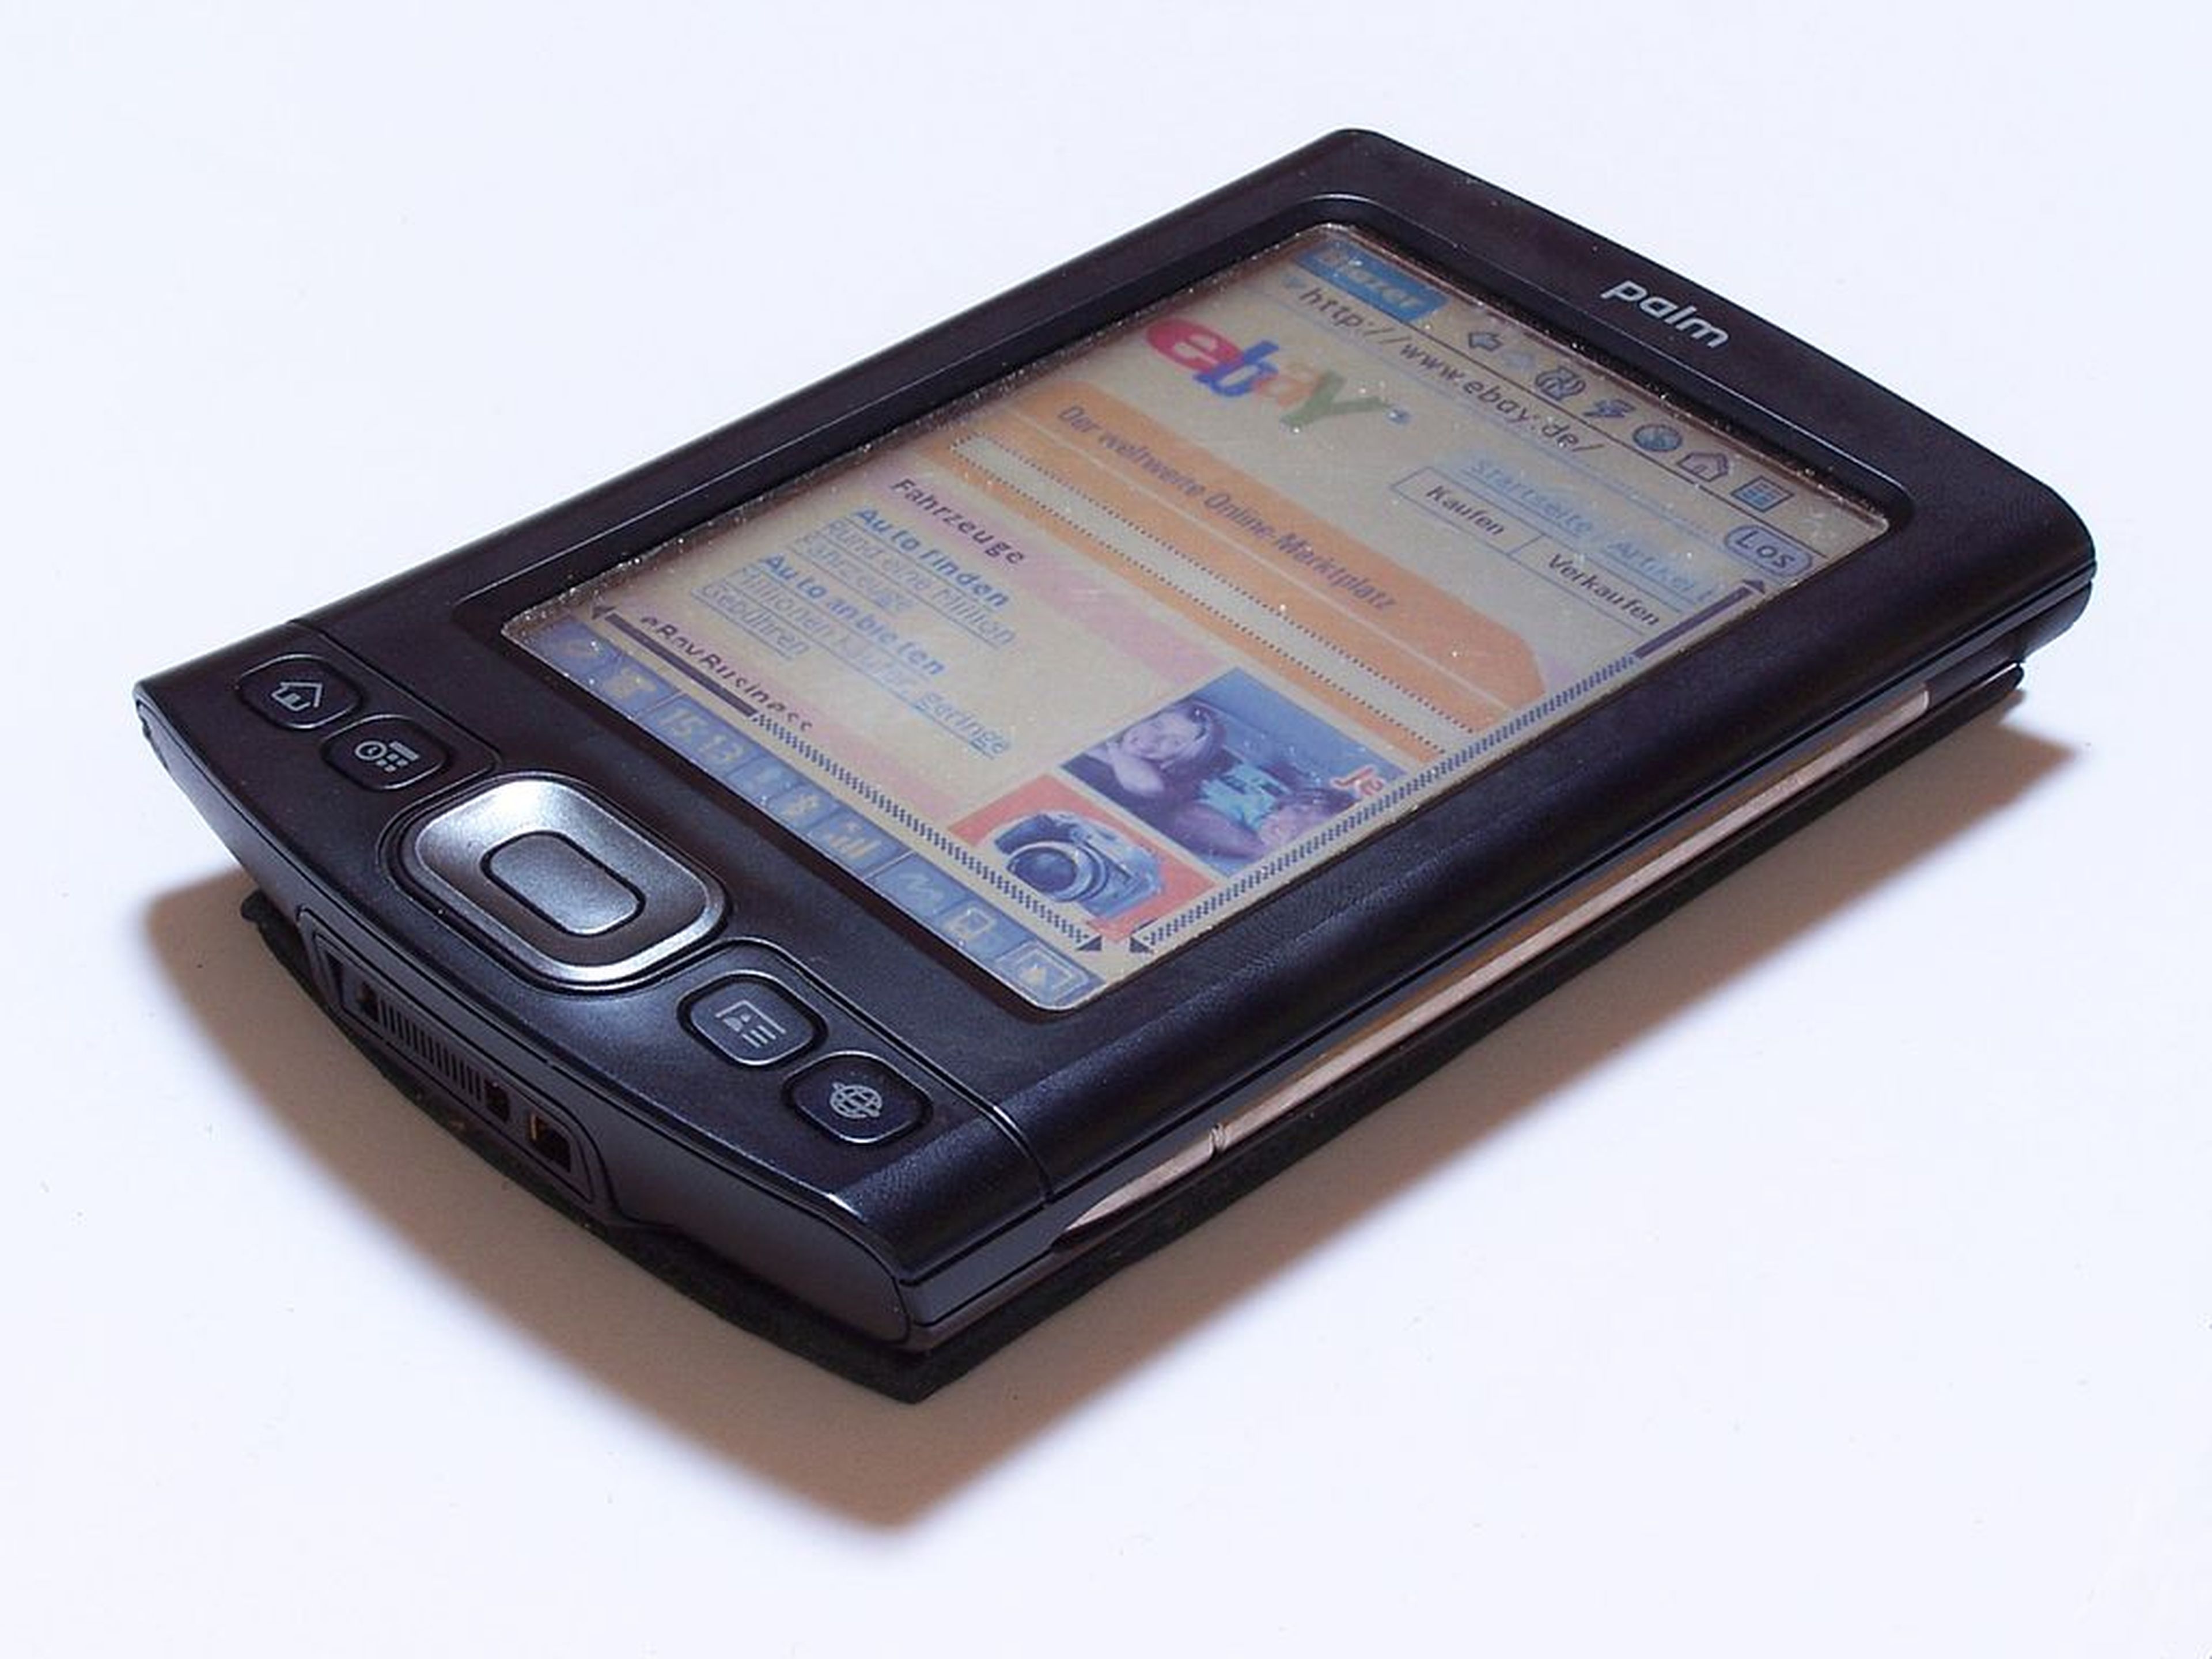 Palm TX, una de las PDAs más populares